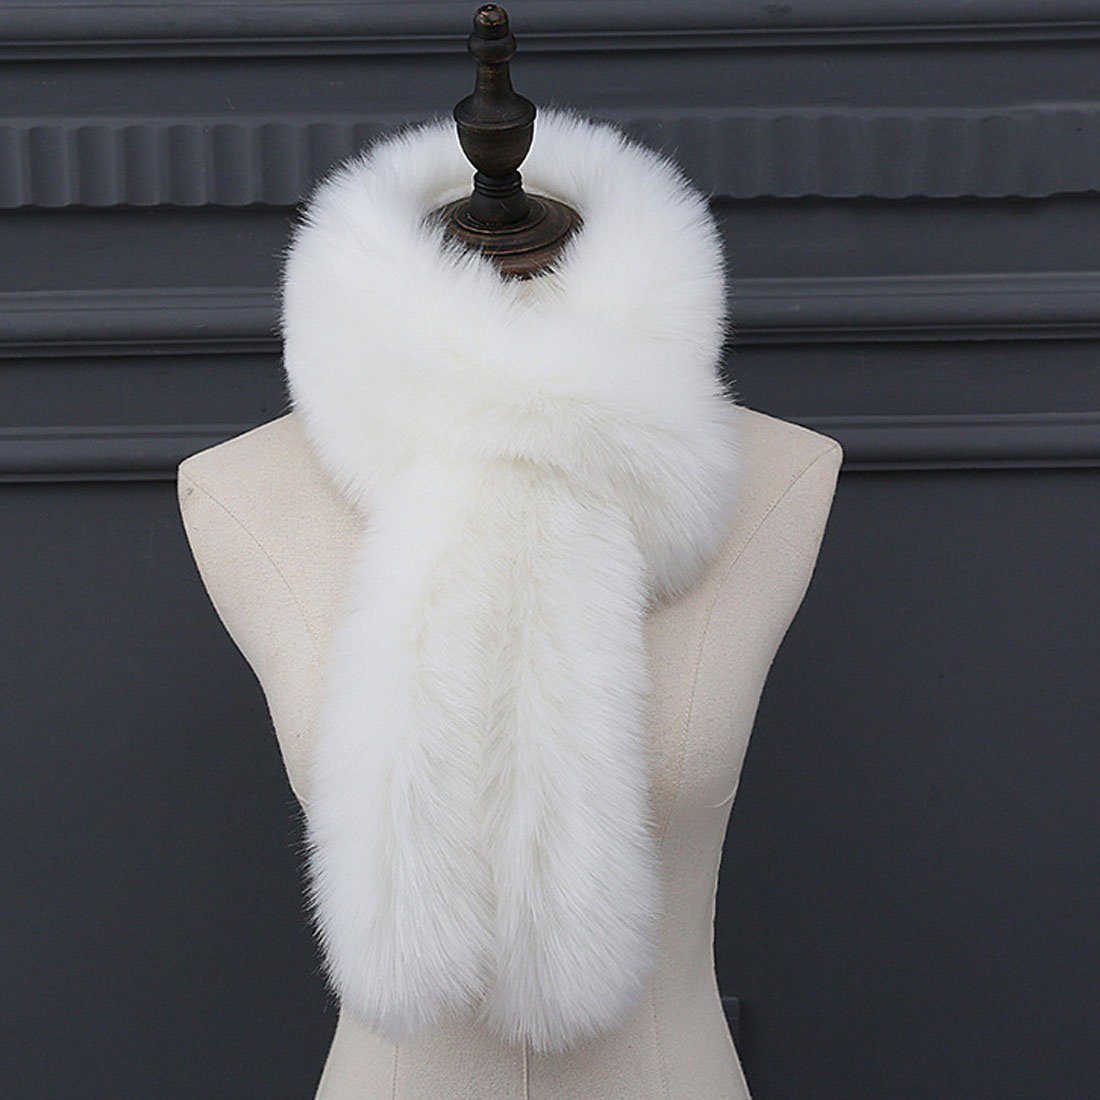 DÖRÖY Modeschal warm Kunstpelz Schal, Pelz Damen Mode Nachahmung verdickt Weiß Winter Schal